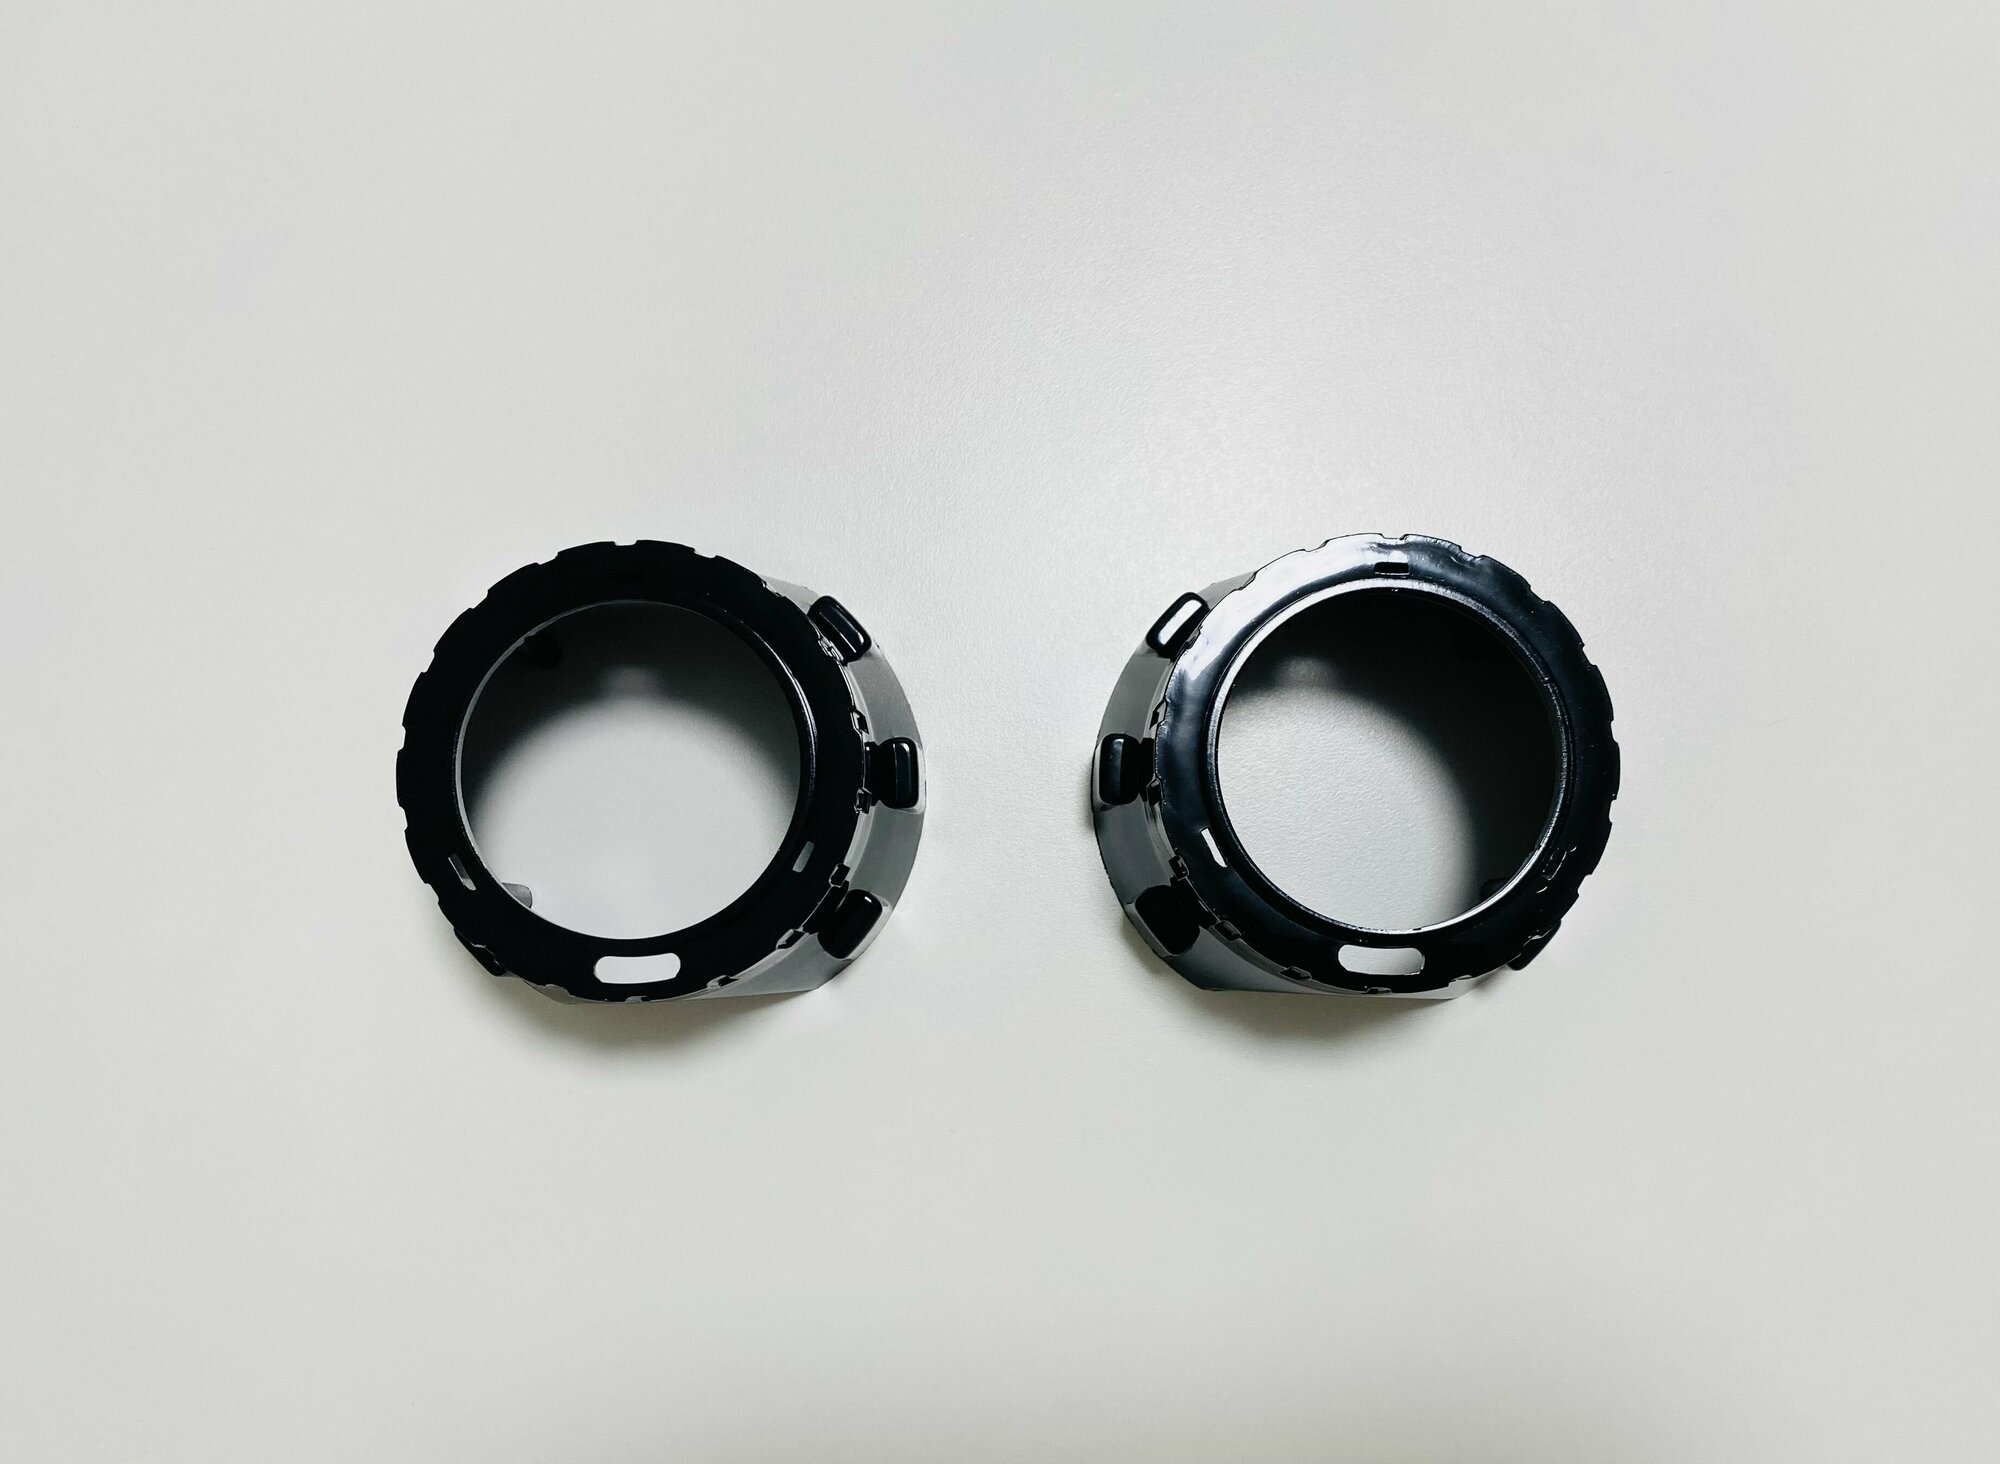 Маски для линз, декоративные бленды №261BG для модулей 2.5", цвет черный, с крепежом под габариты (кольца) - "Ангельские глазки" 80мм, комплект 2 шт